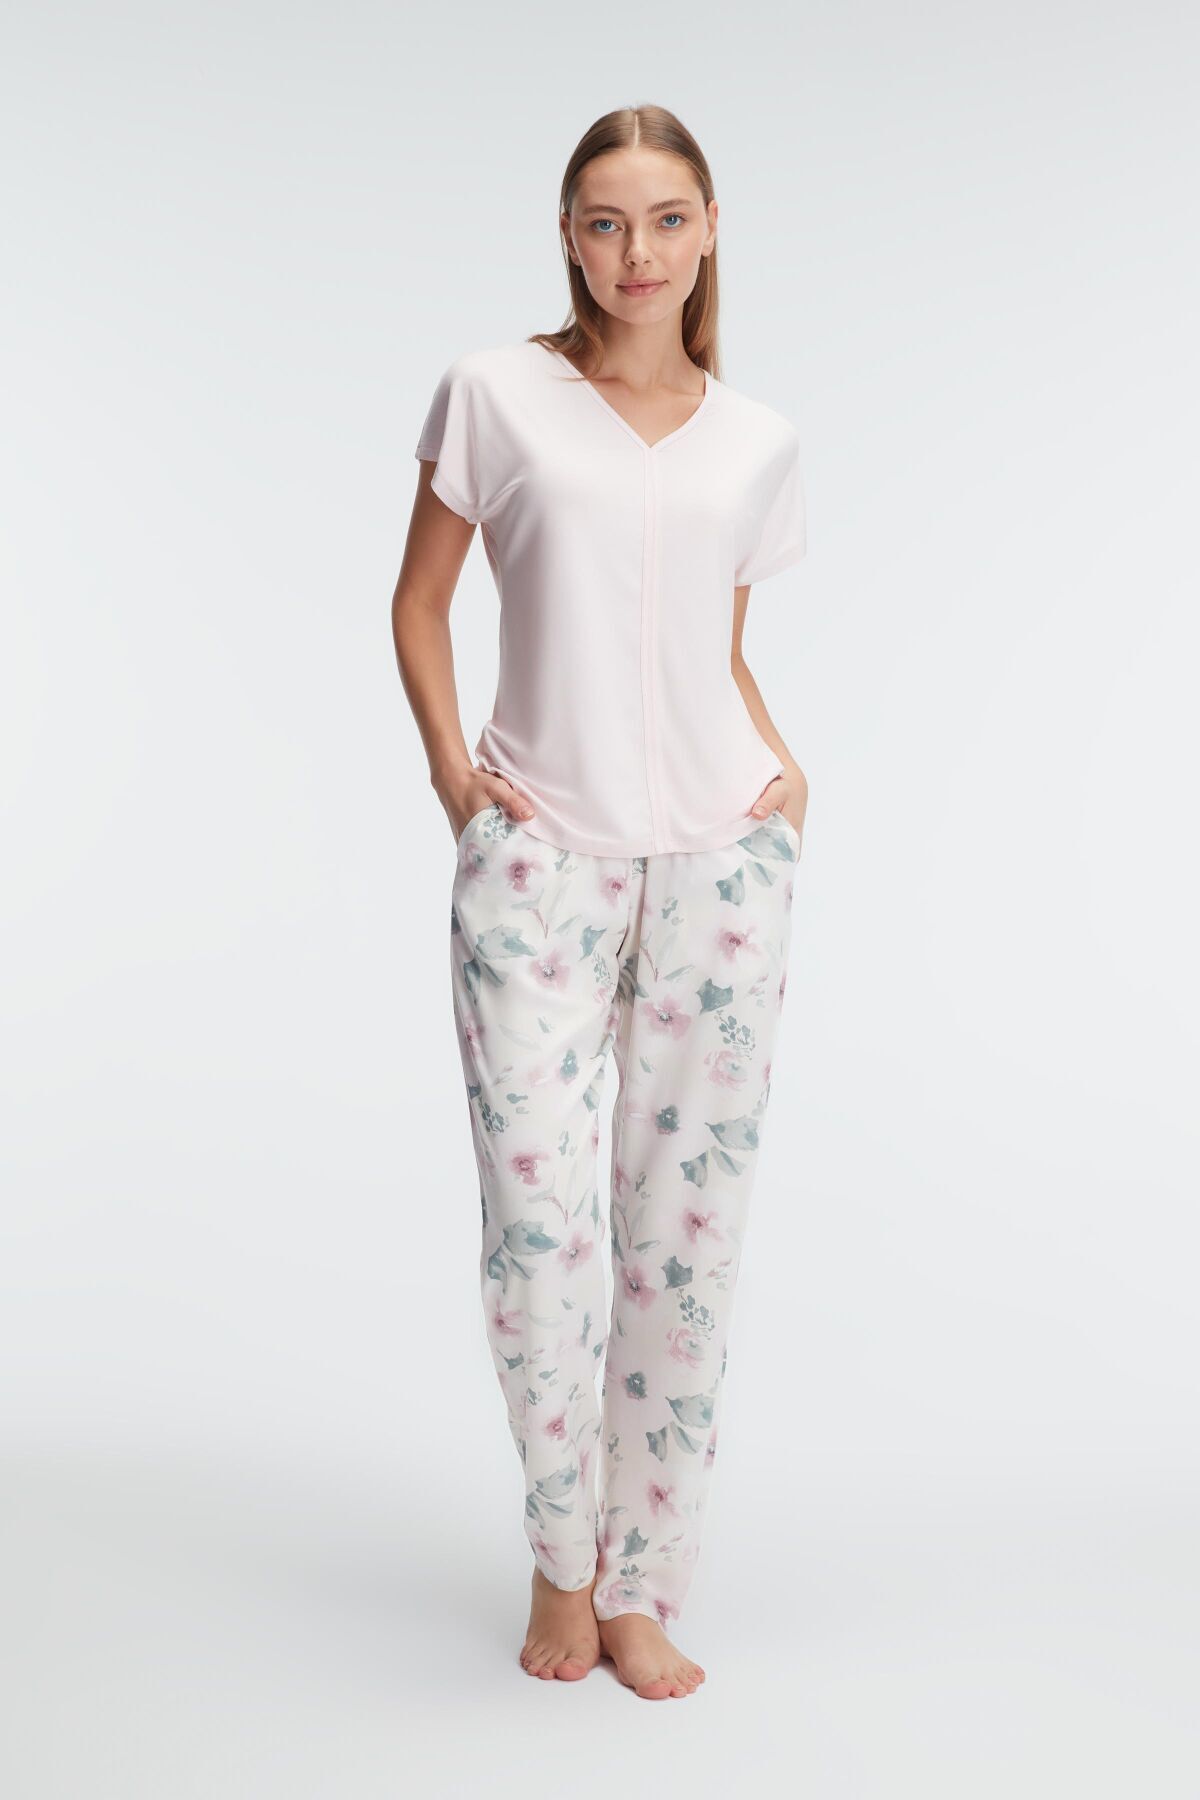 Genel Markalar 9868 Ev Giyimi Kısa Kol V Yaka Kadın Viskon Çiçek Desenli Yazlık Örme Normal Bel Pijama Takımı